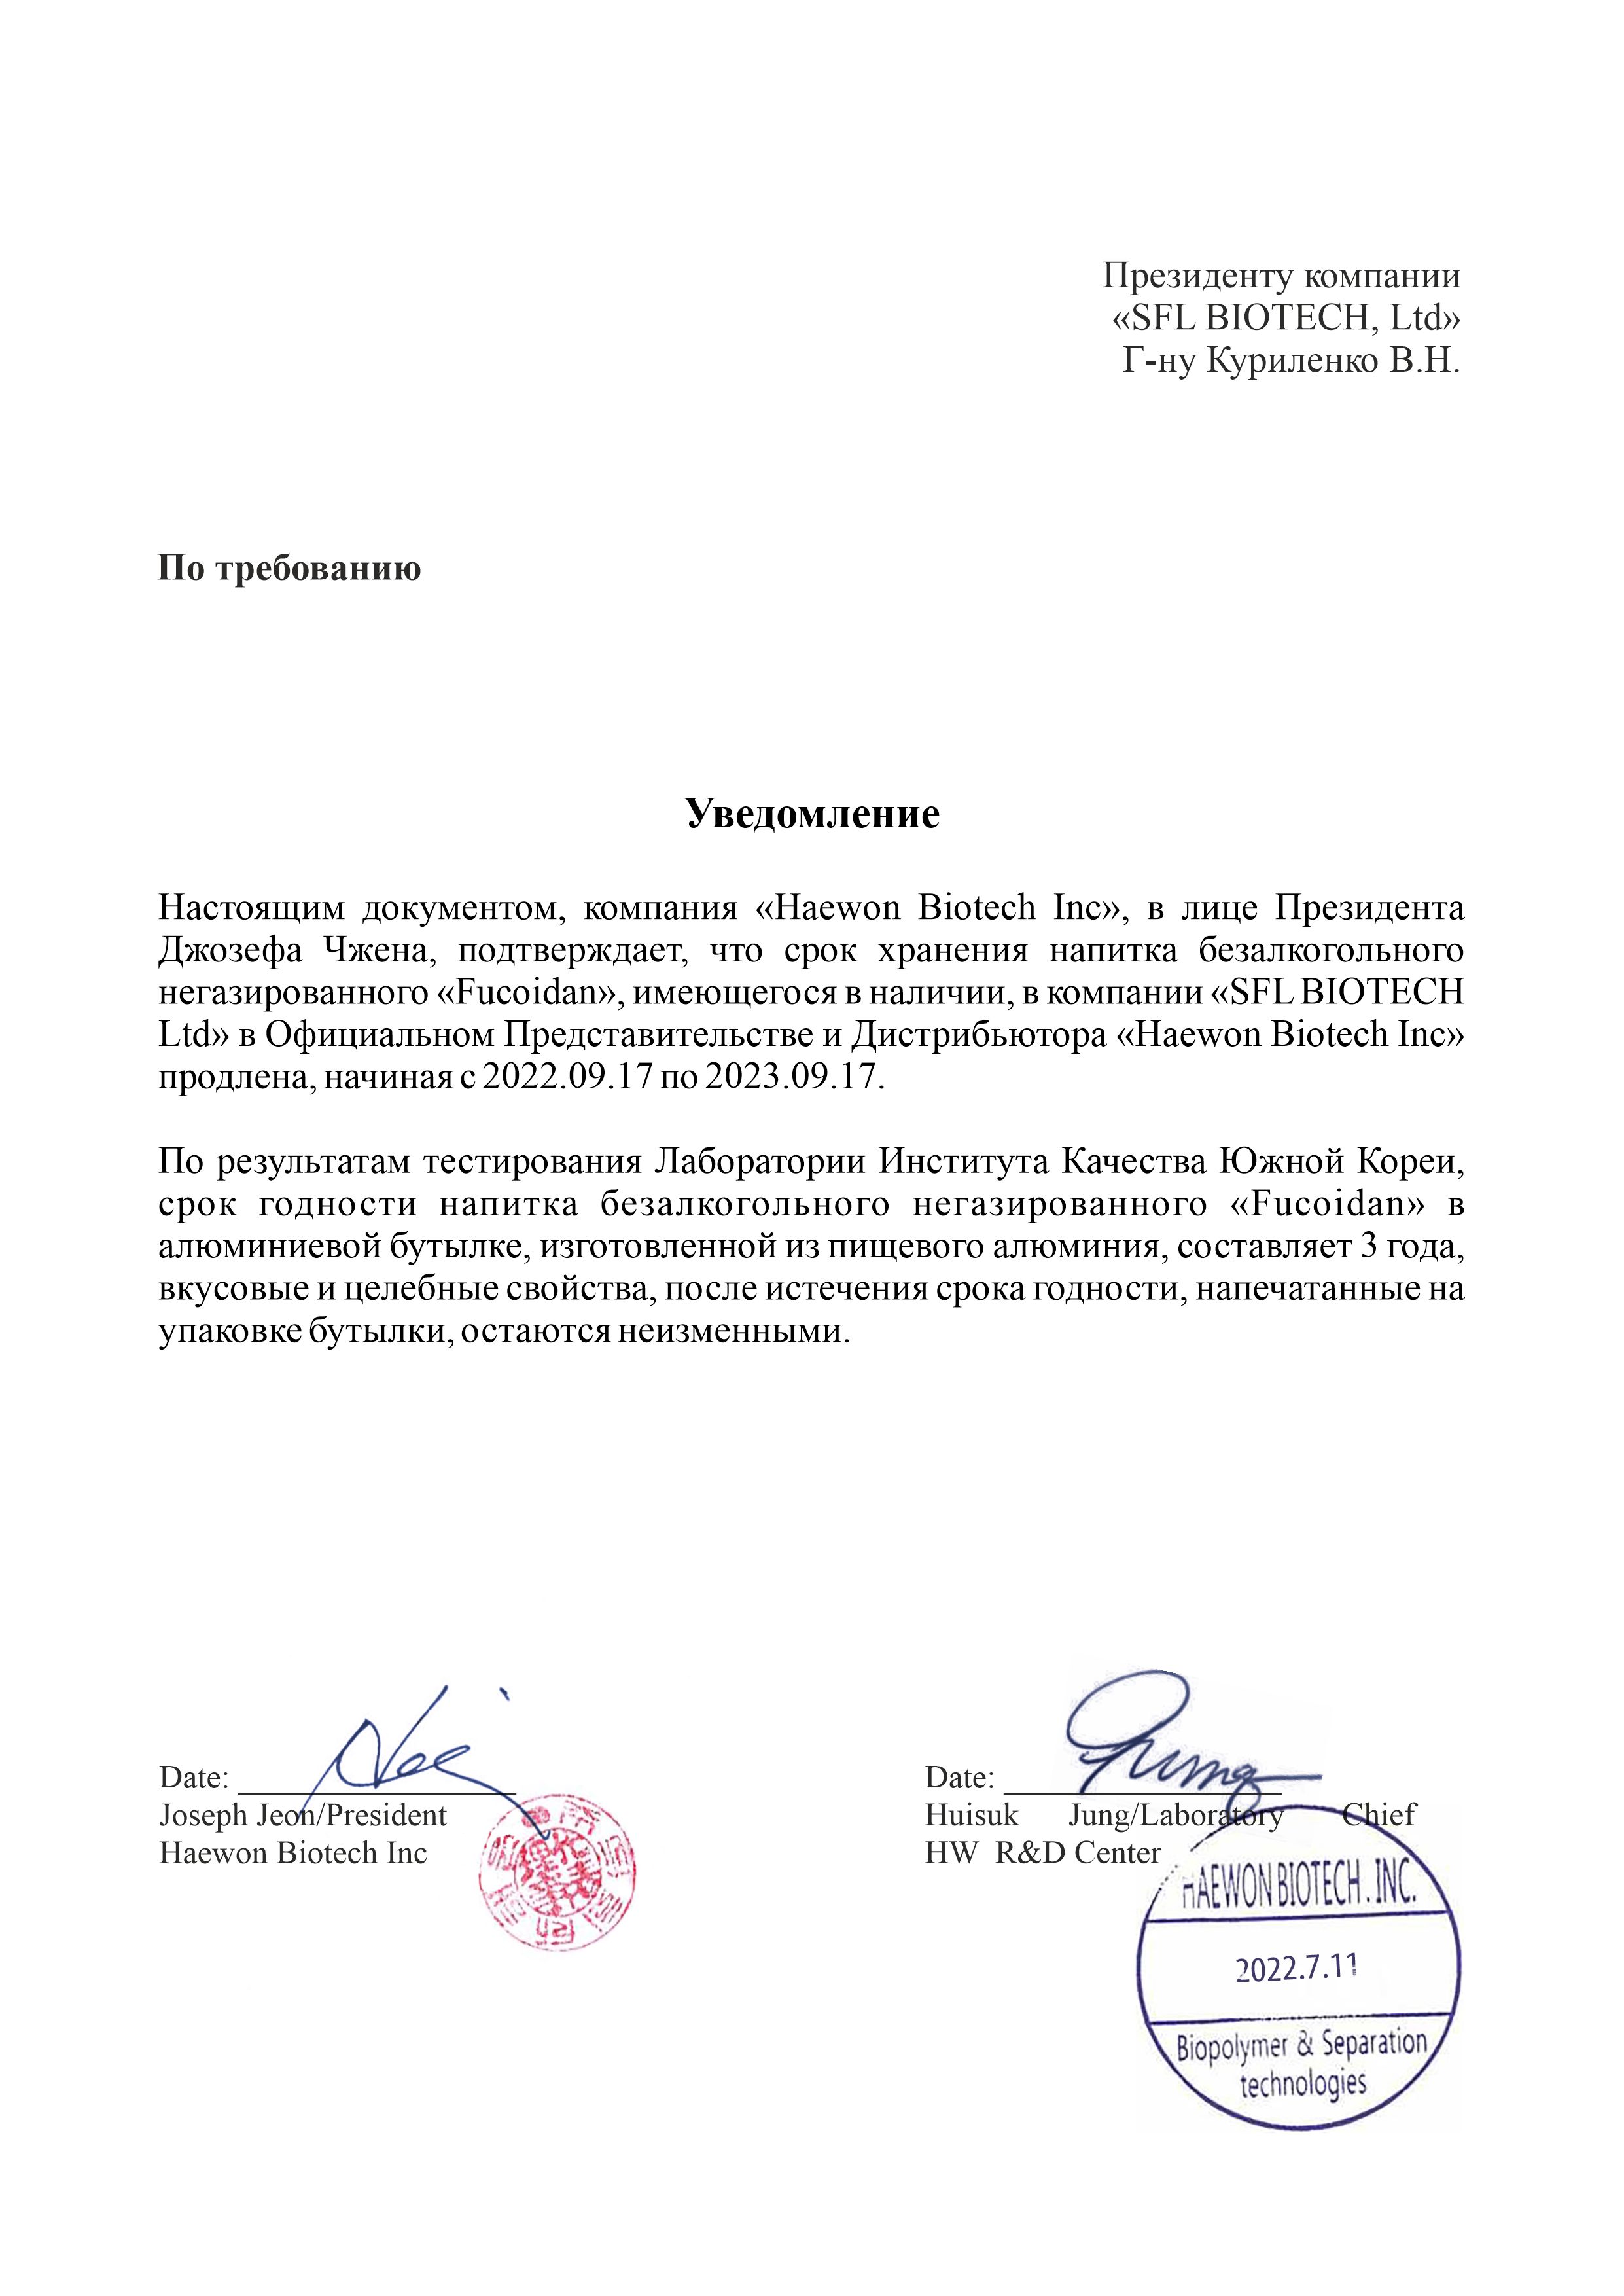 Продление сроков употребления напитка «Fucoidan» до 17 сентября 2023 года на русском языке